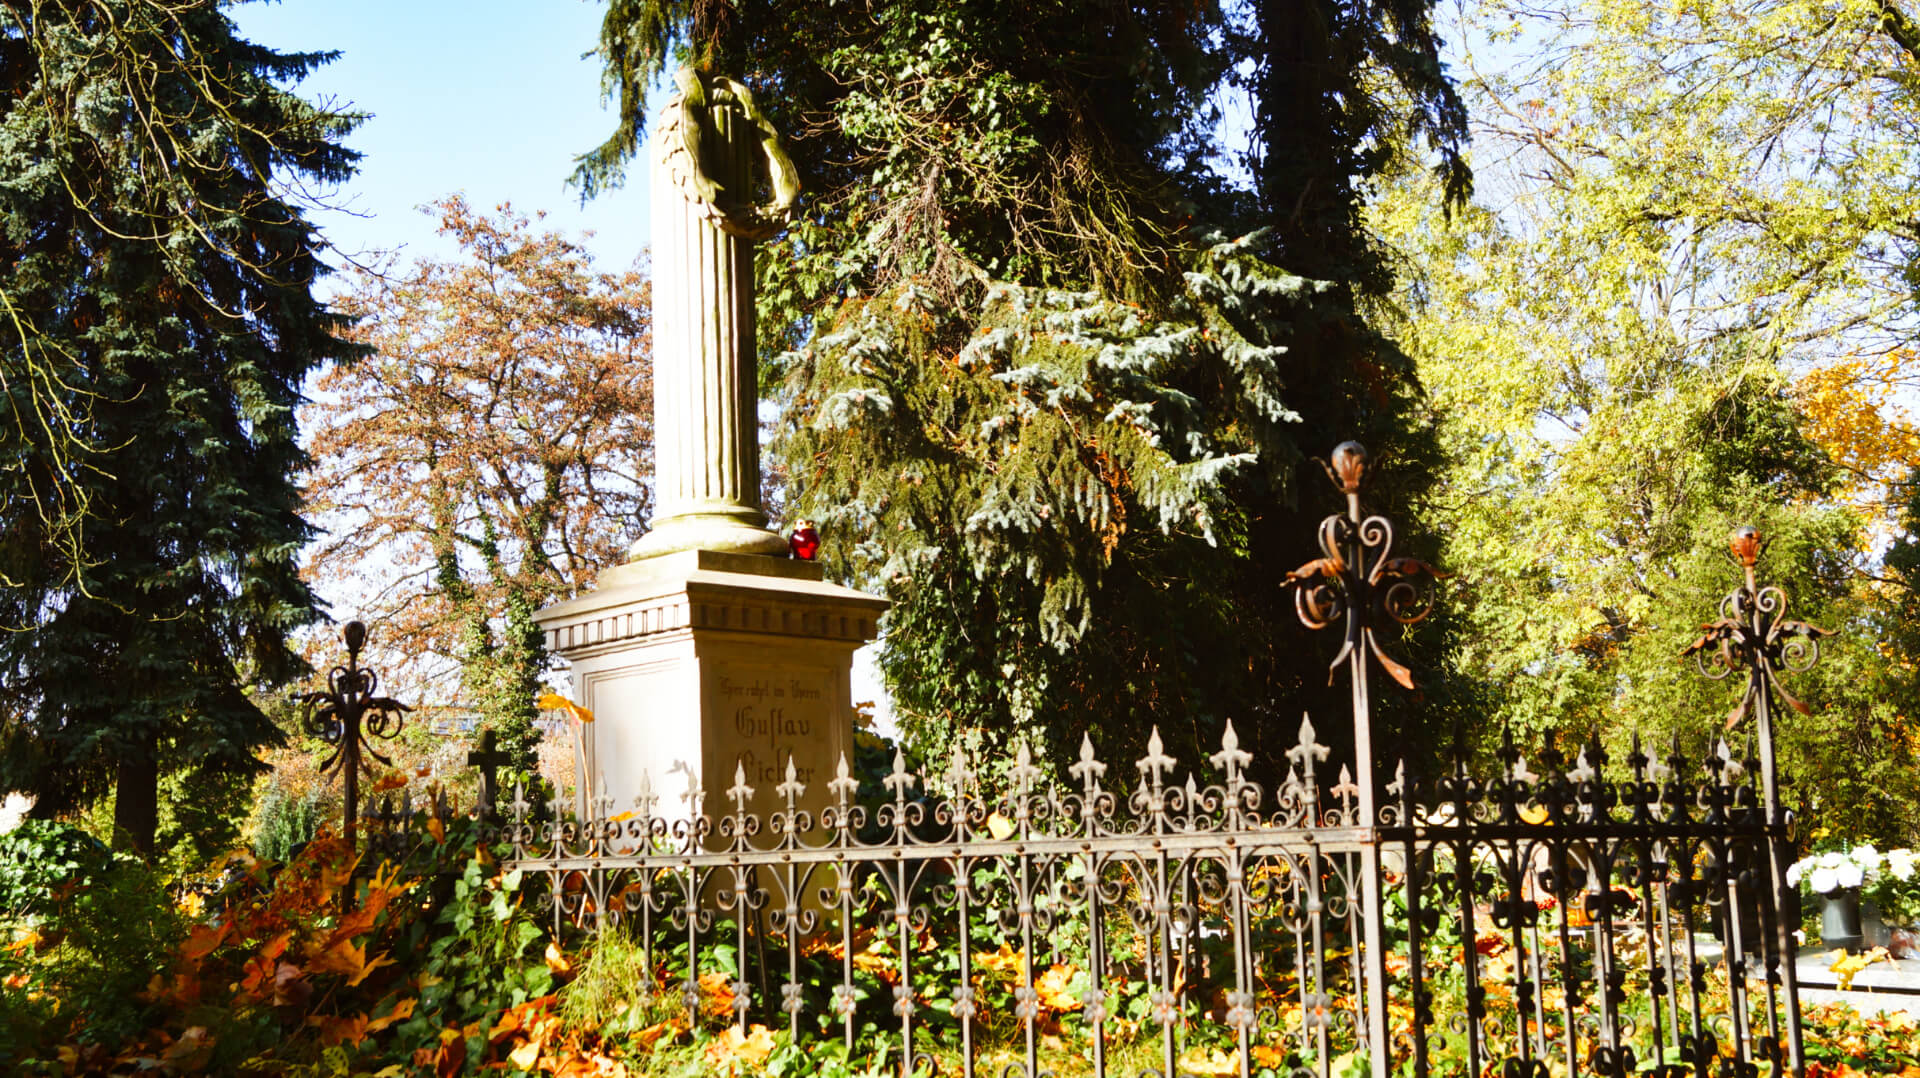 Pomniki na cmentarzu w Łodzi – cmenatrz przy ogrodowej w Łodzi